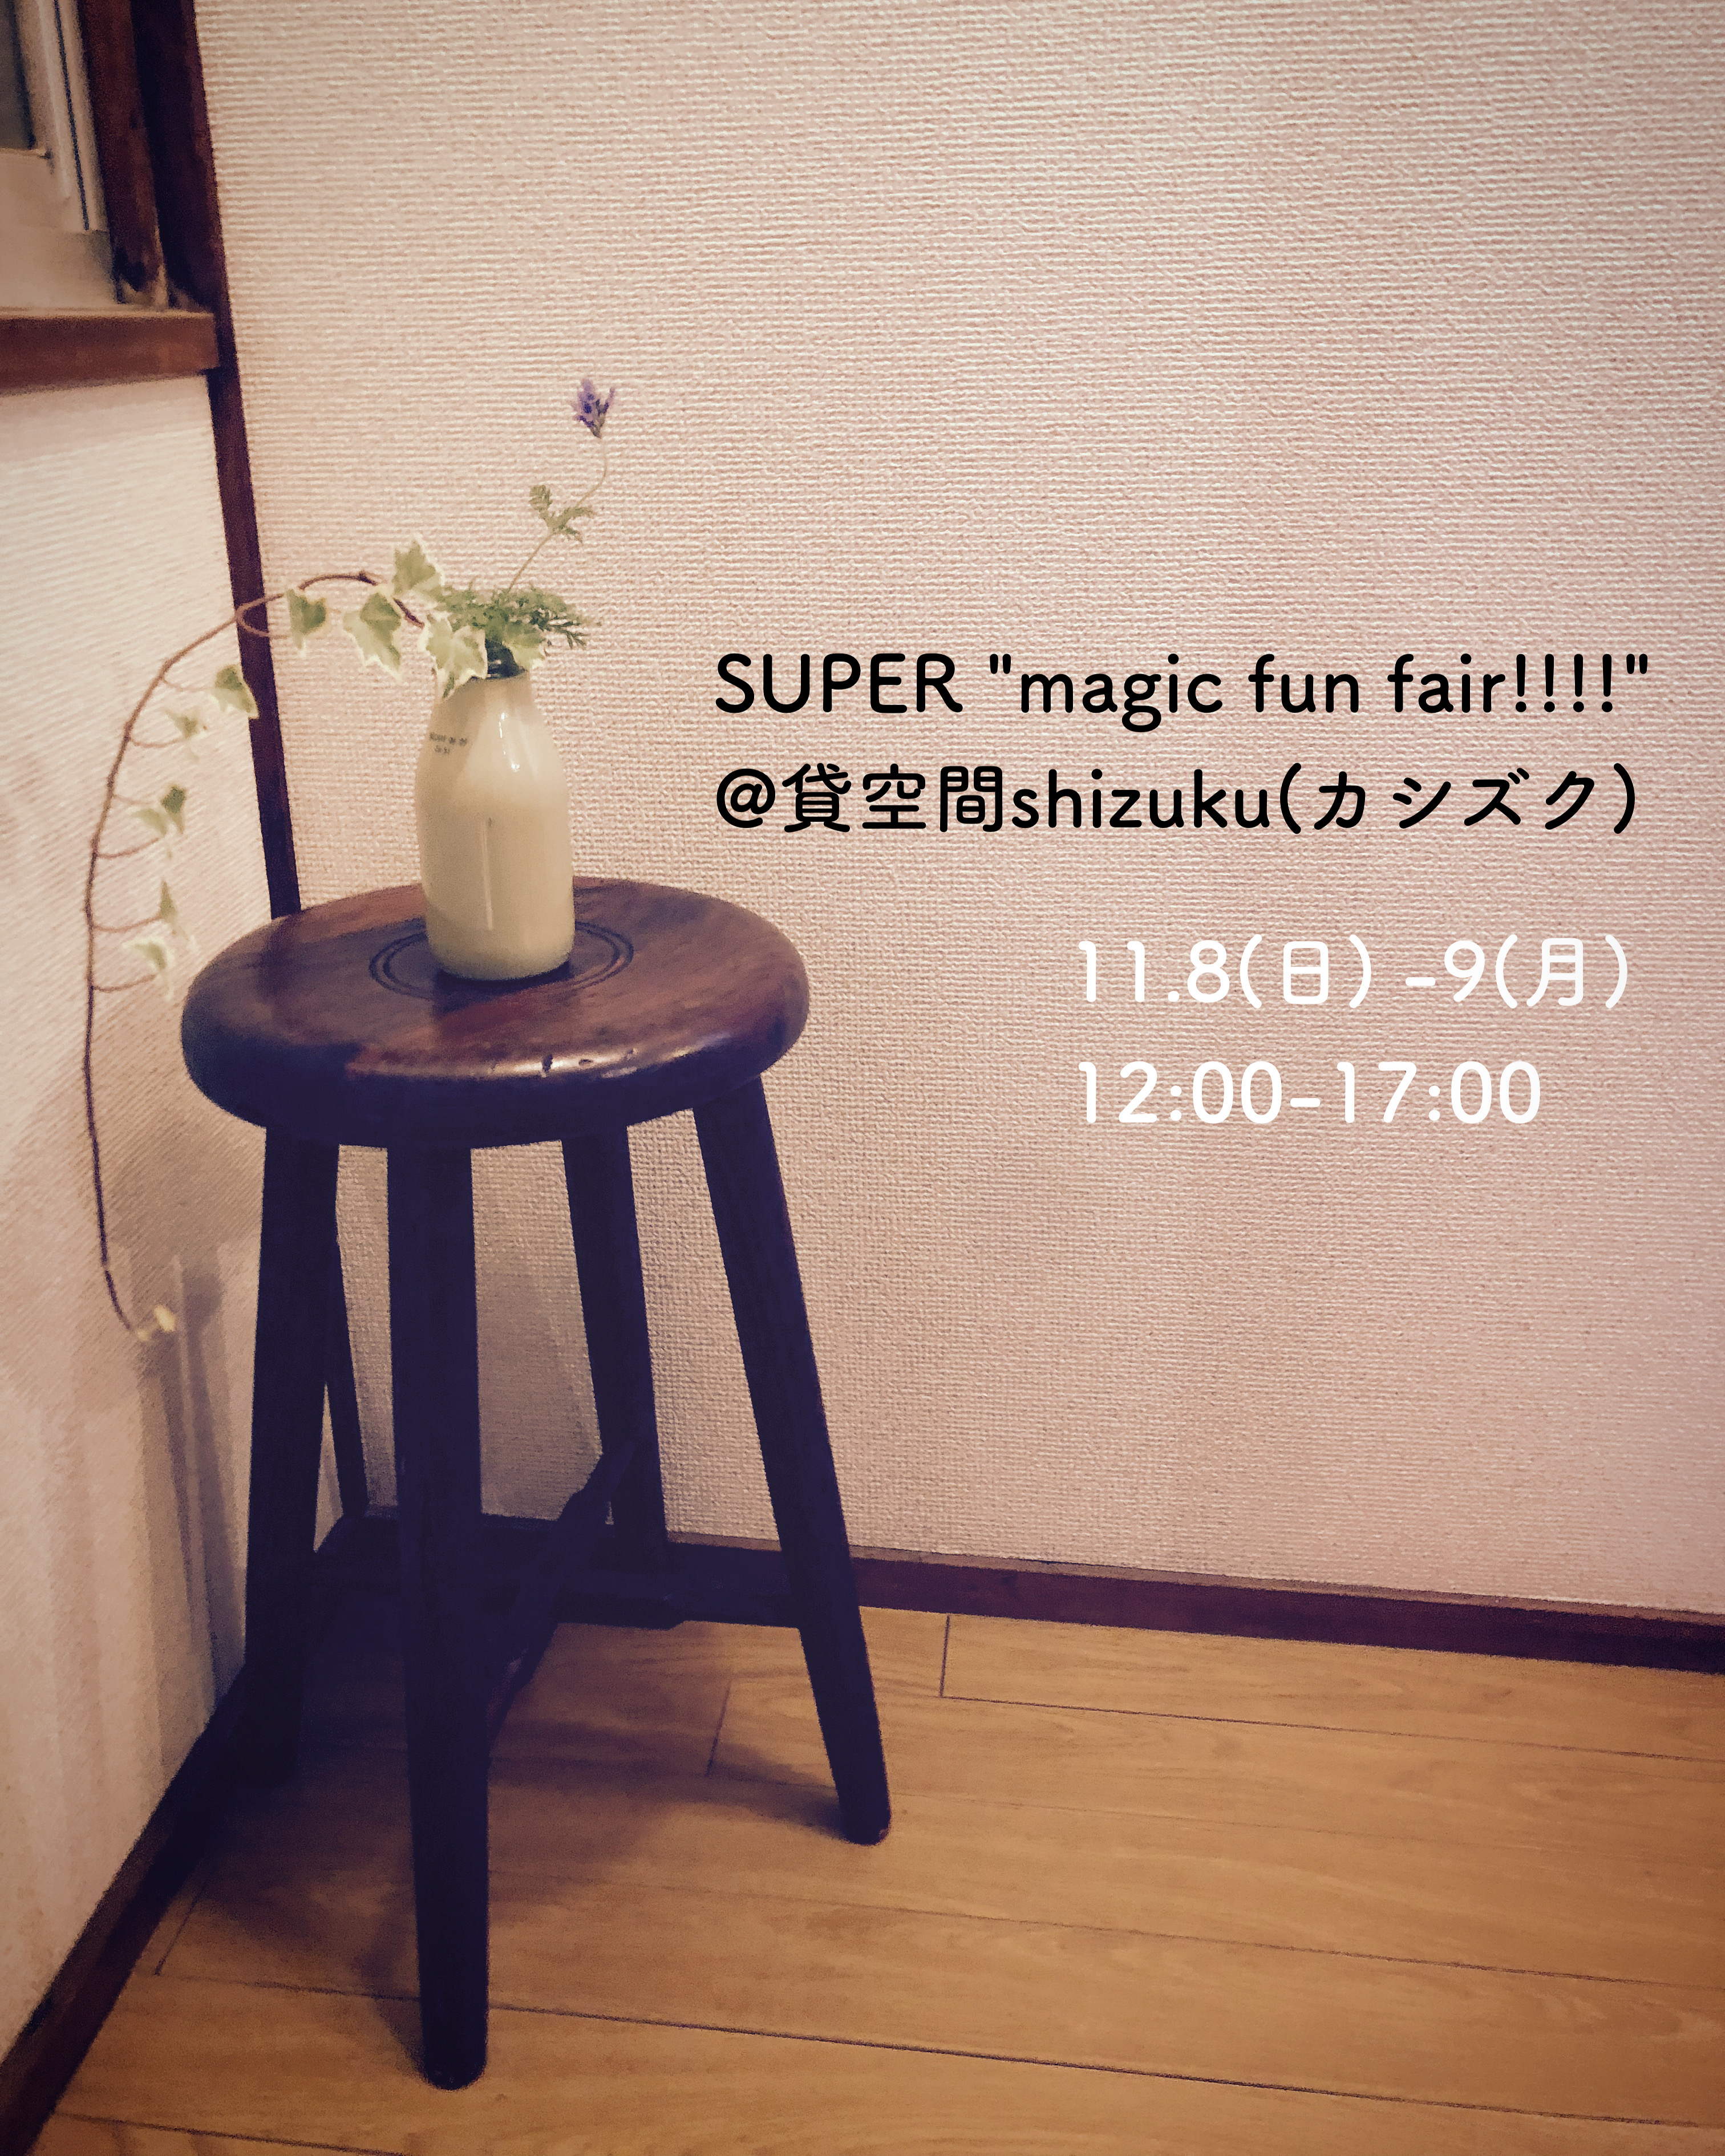 SUPER 'magic fun fair!!!!" 202011